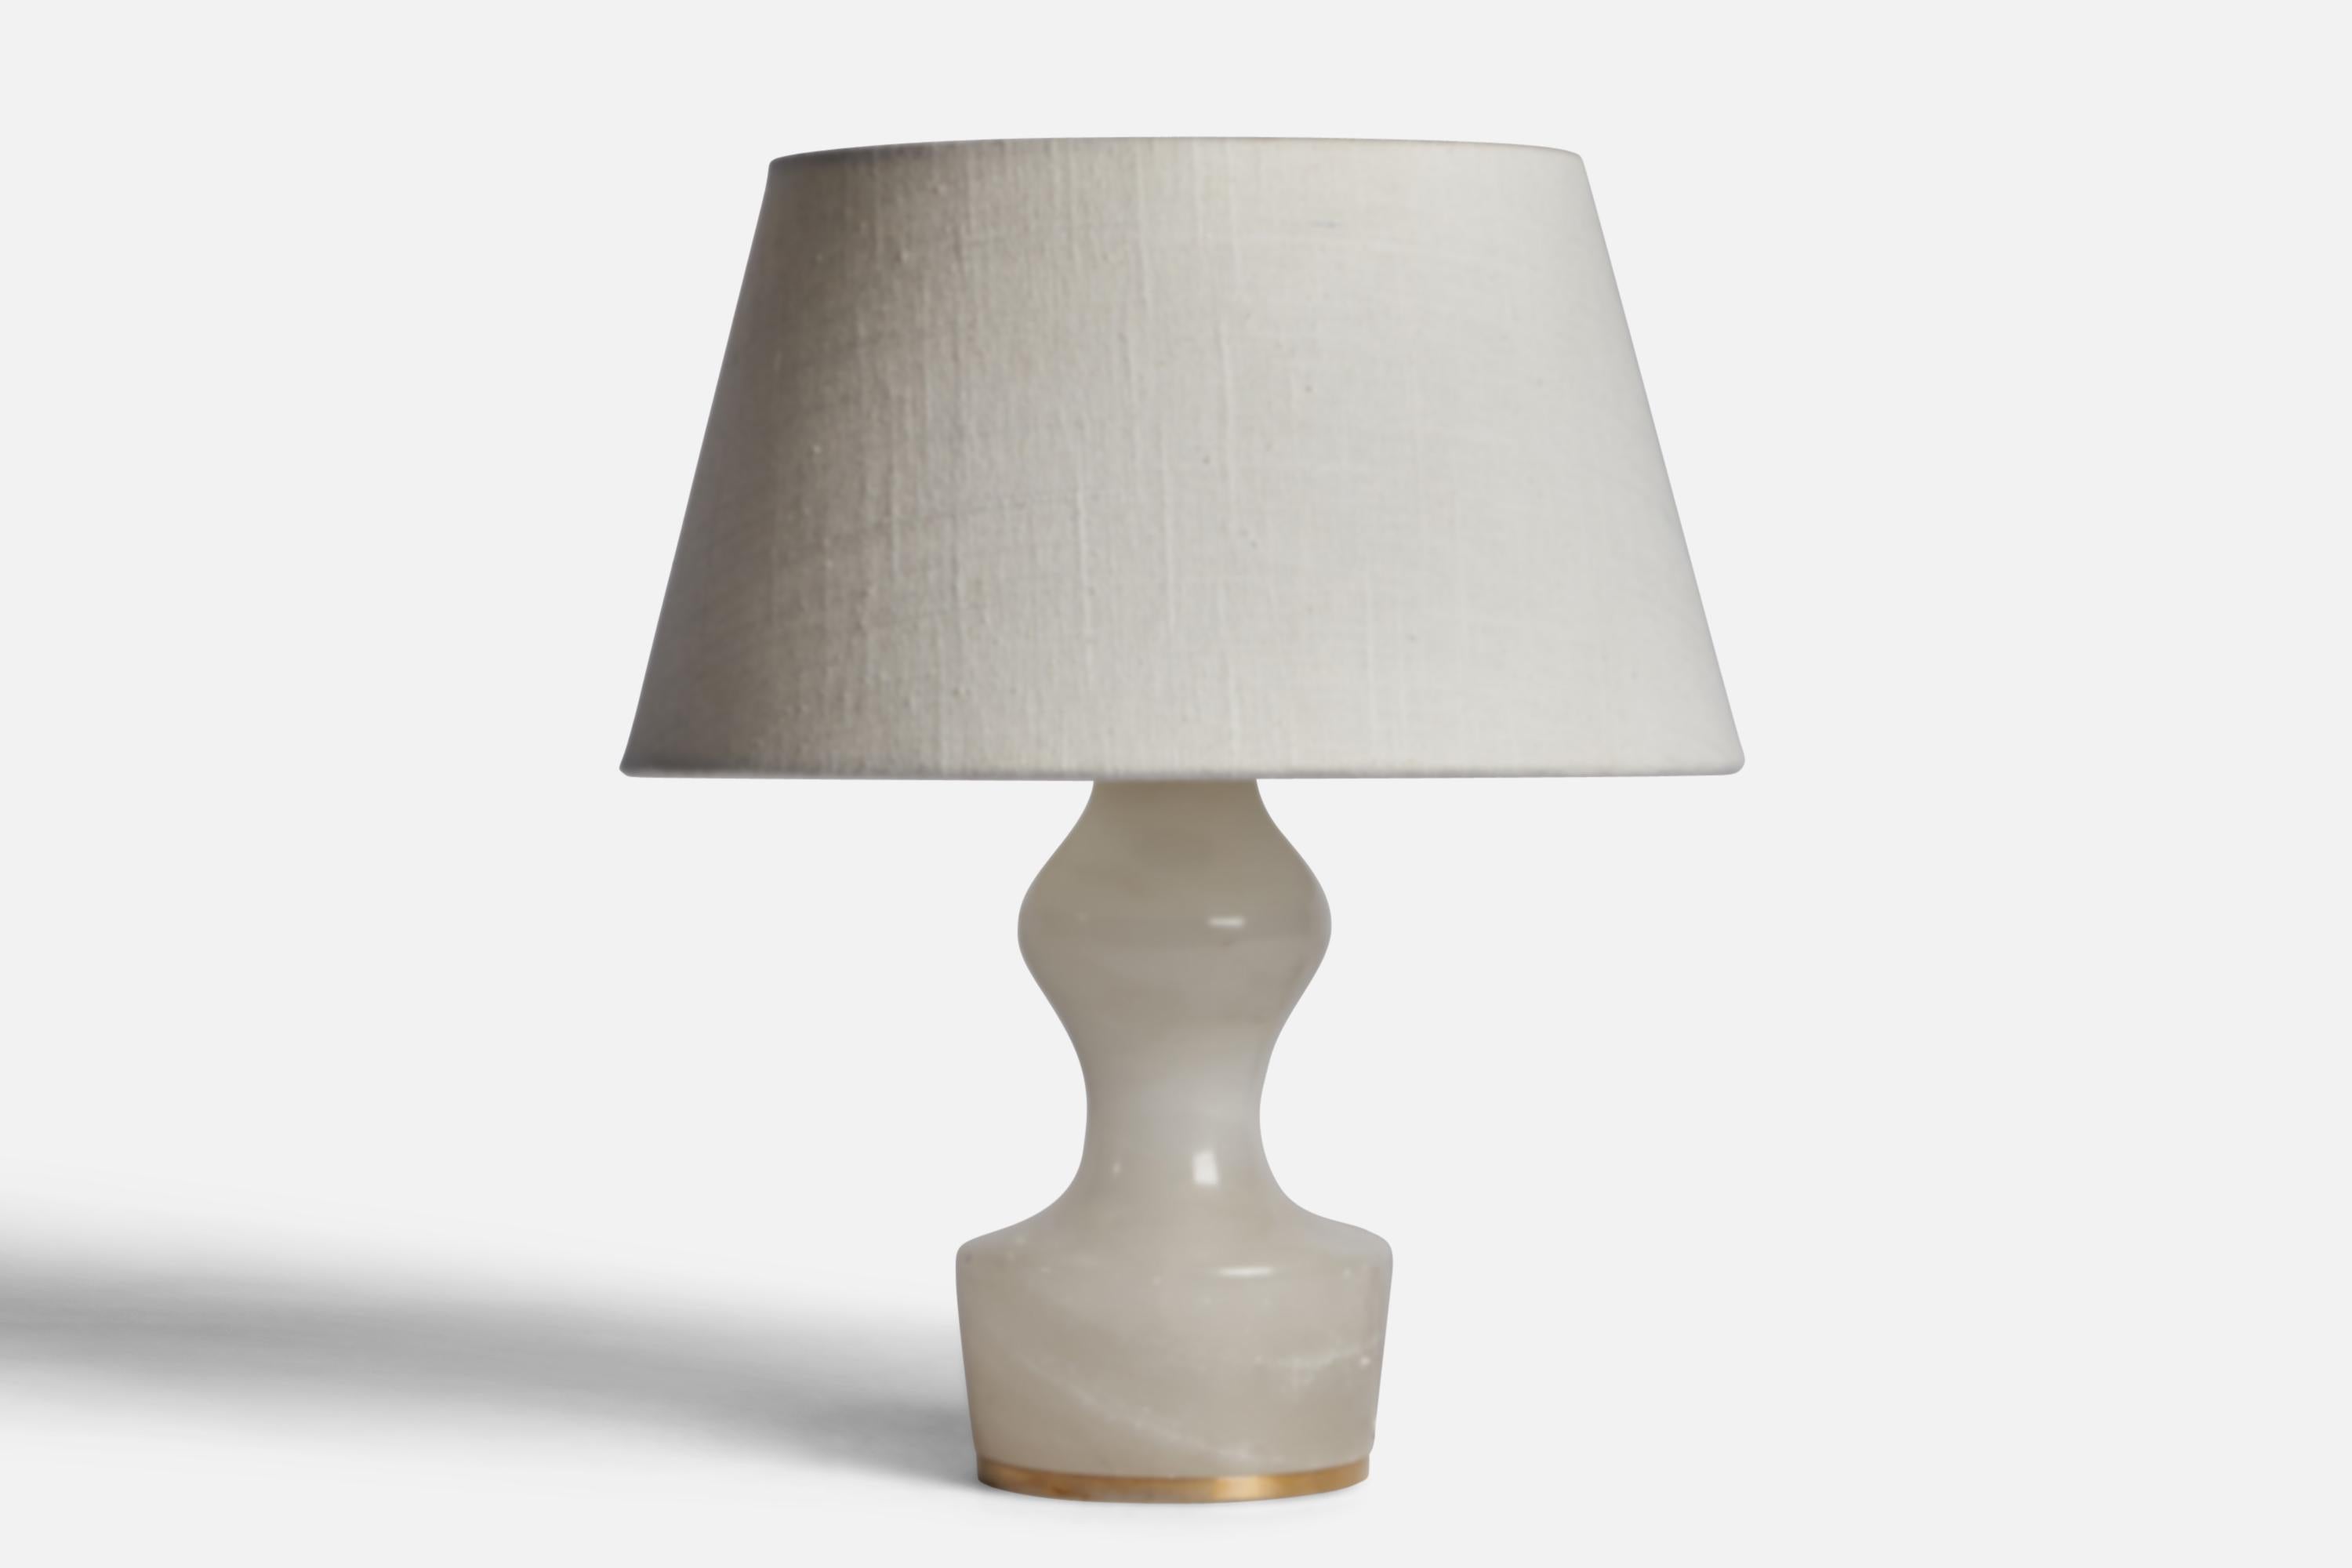 Lampe de table en onyx et laiton, conçue et produite en Italie, C.C..

Dimensions de la lampe (pouces) : 8.75